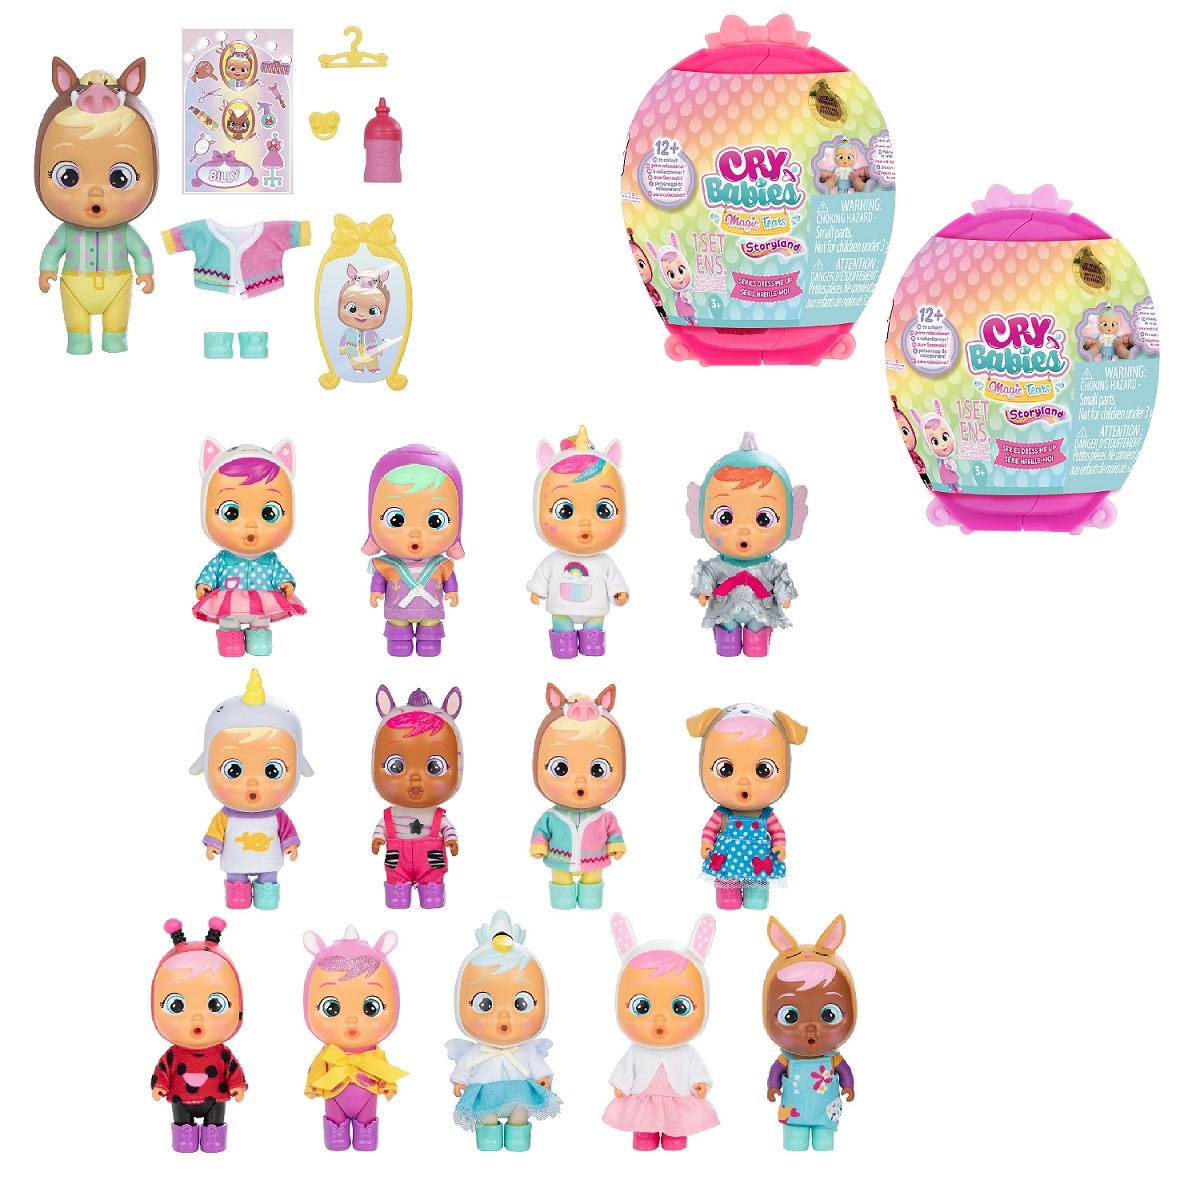 Кукла IMC Toys Cry Babies Magic Tears серия DRESS ME UP 81970